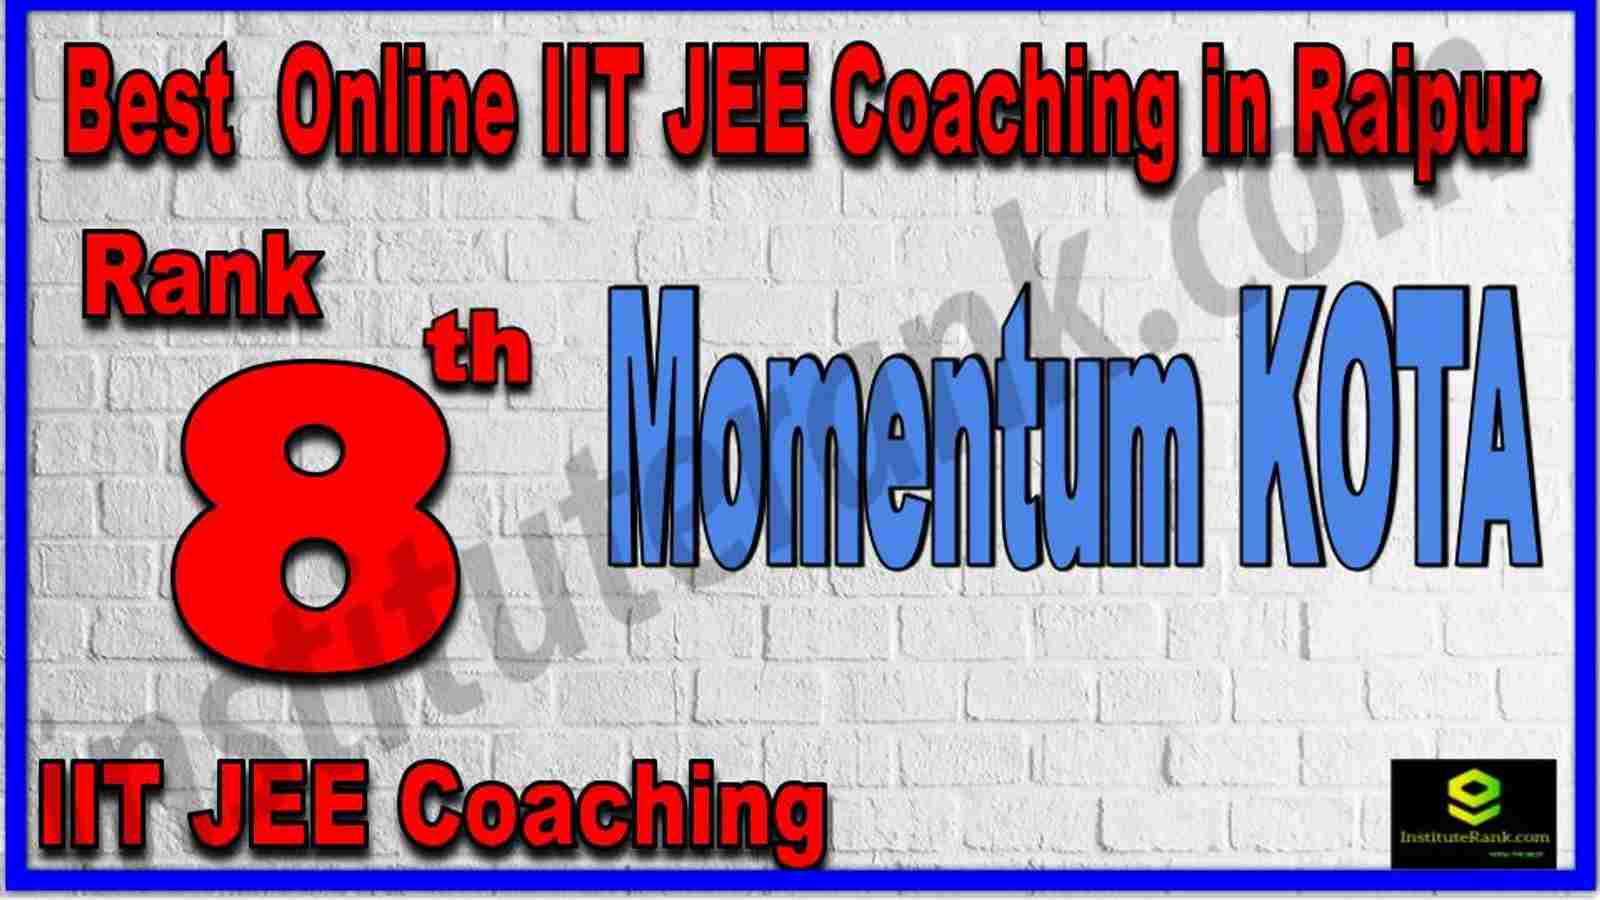 Rank 8th Best Online IIT JEE Coaching in Raipur